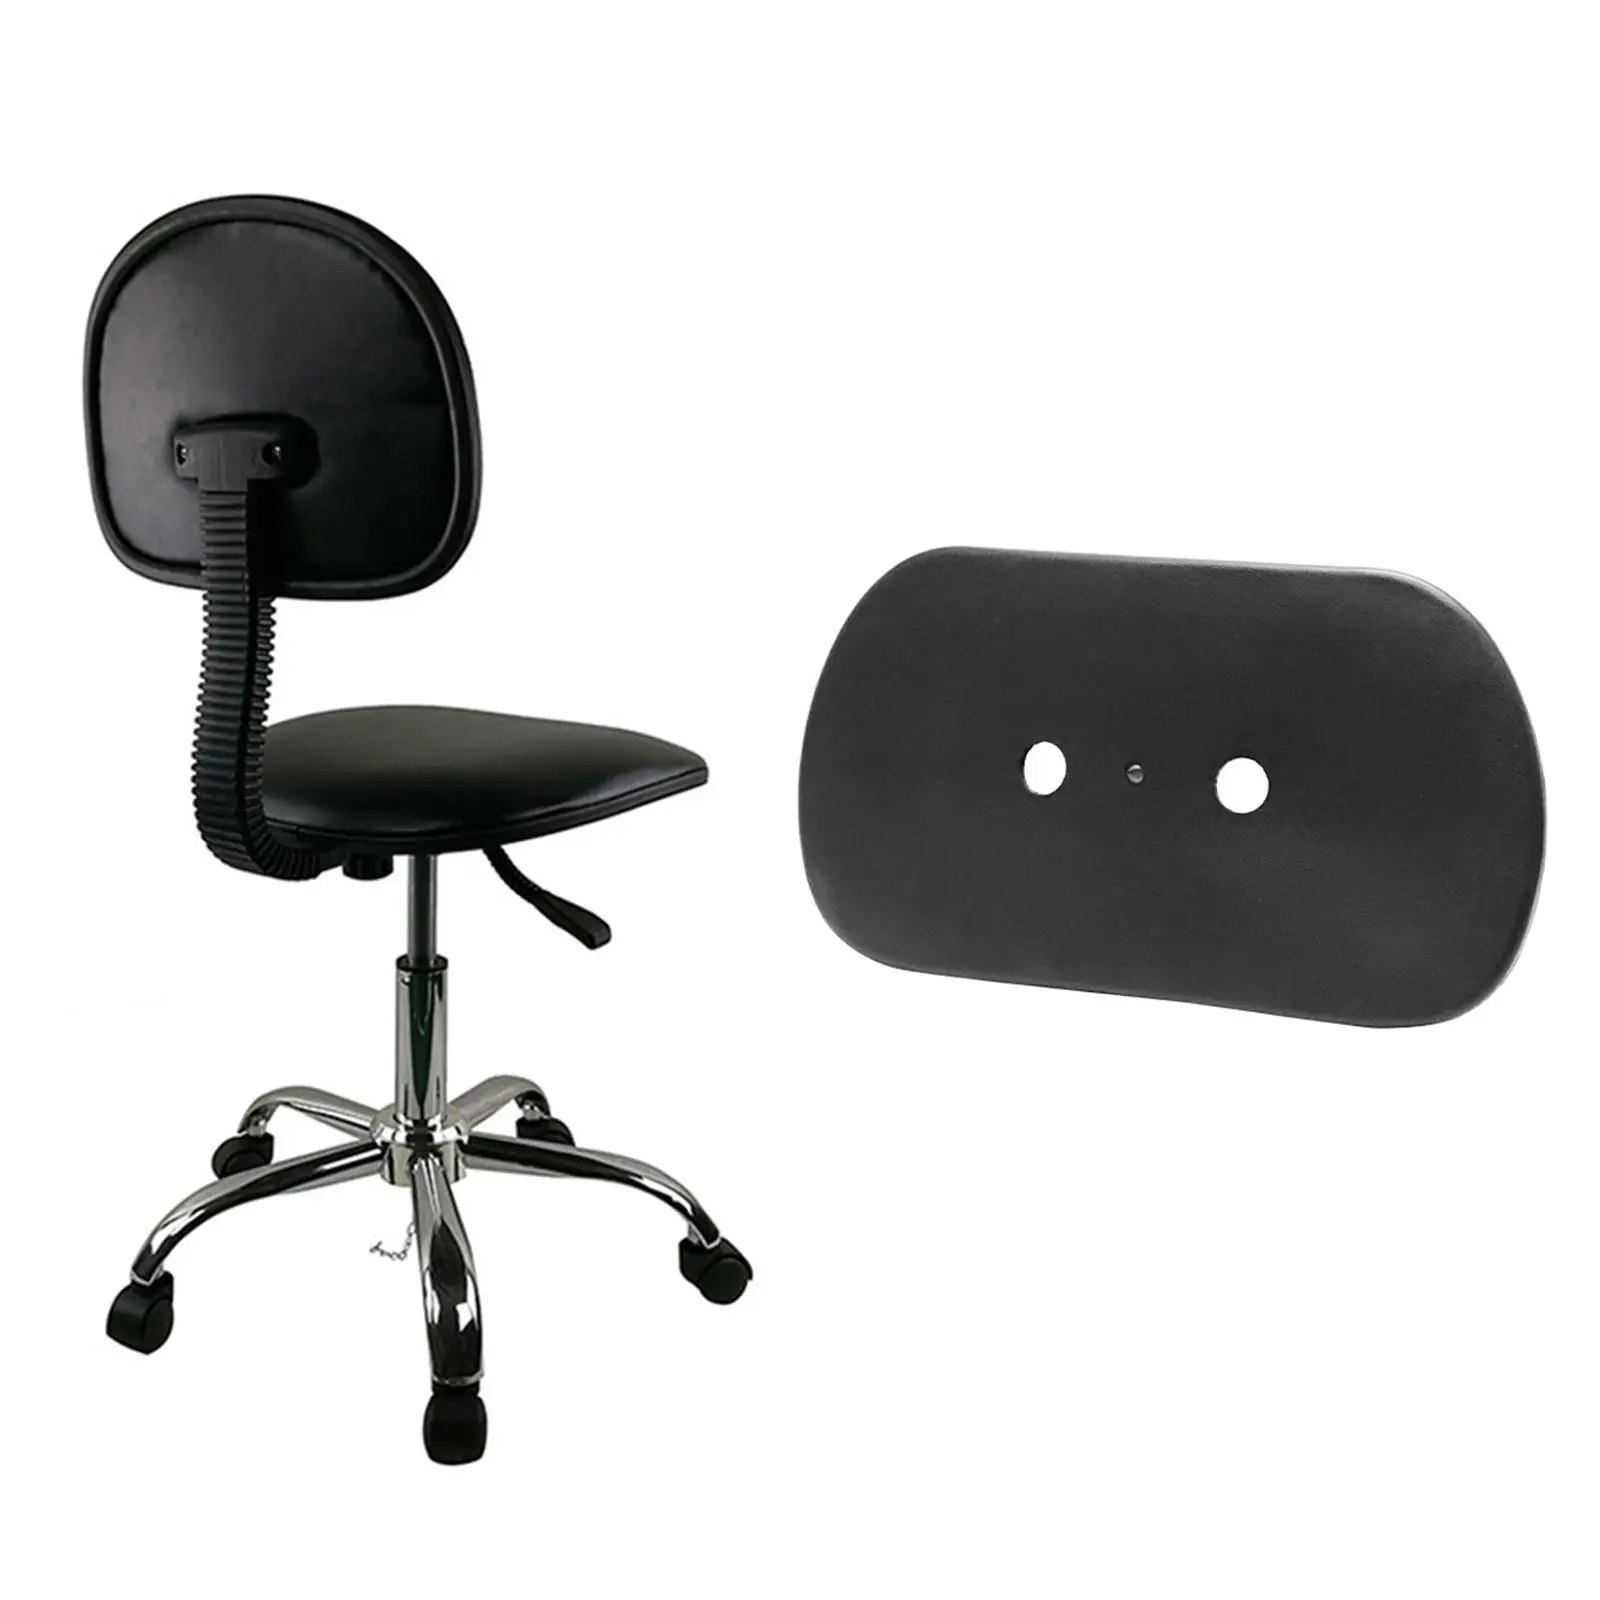 Dossier de chaise de bureau confortable, remplacement, noir, accessoire de meubles, installation facile, support dorsal pour chaise de bureau